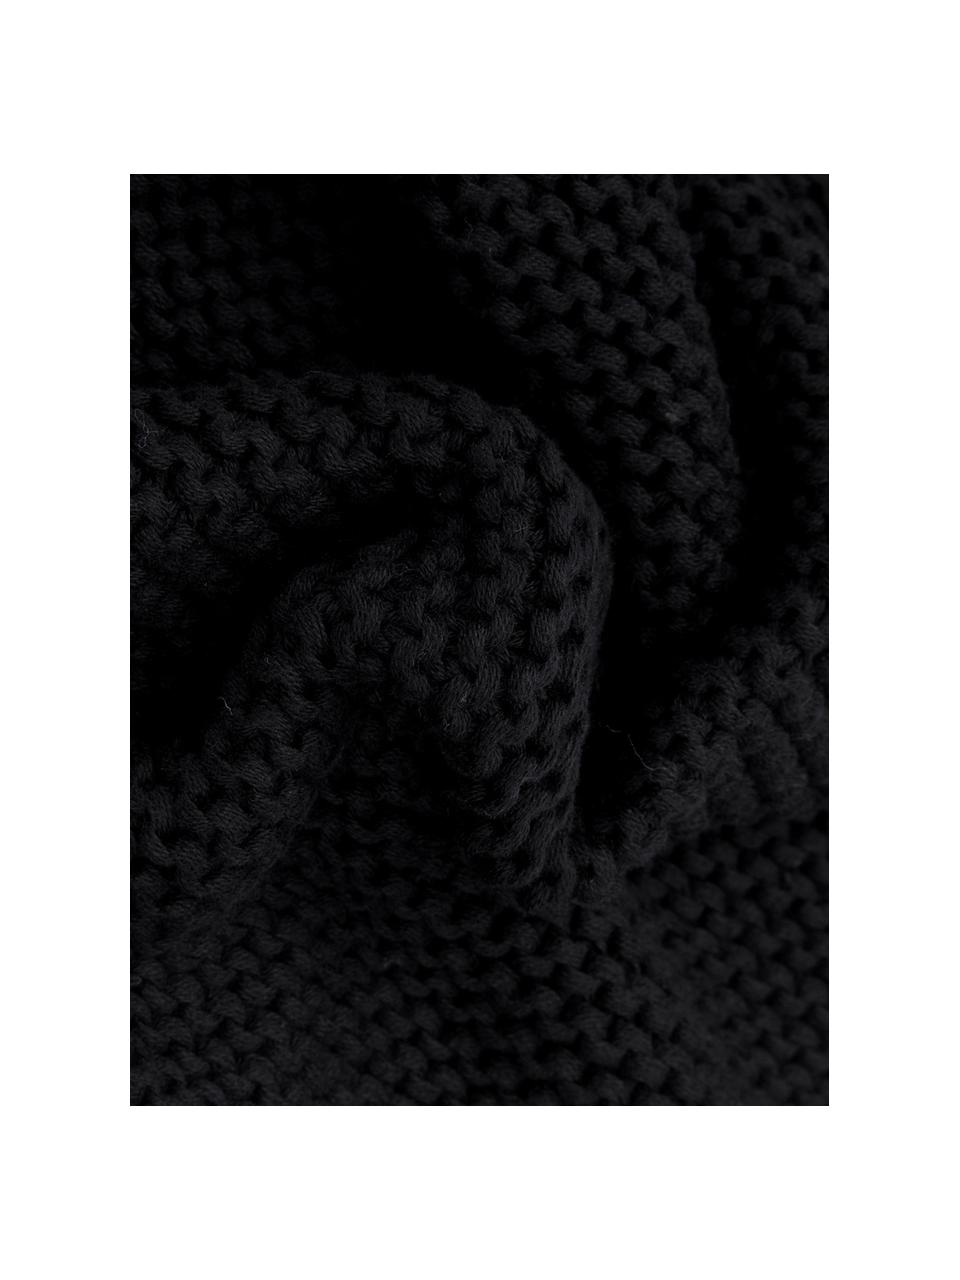 Housse de coussin rectangulaire tricot noir Adalyn, 100 % coton bio, certifié GOTS, Noir, larg. 30 x long. 50 cm